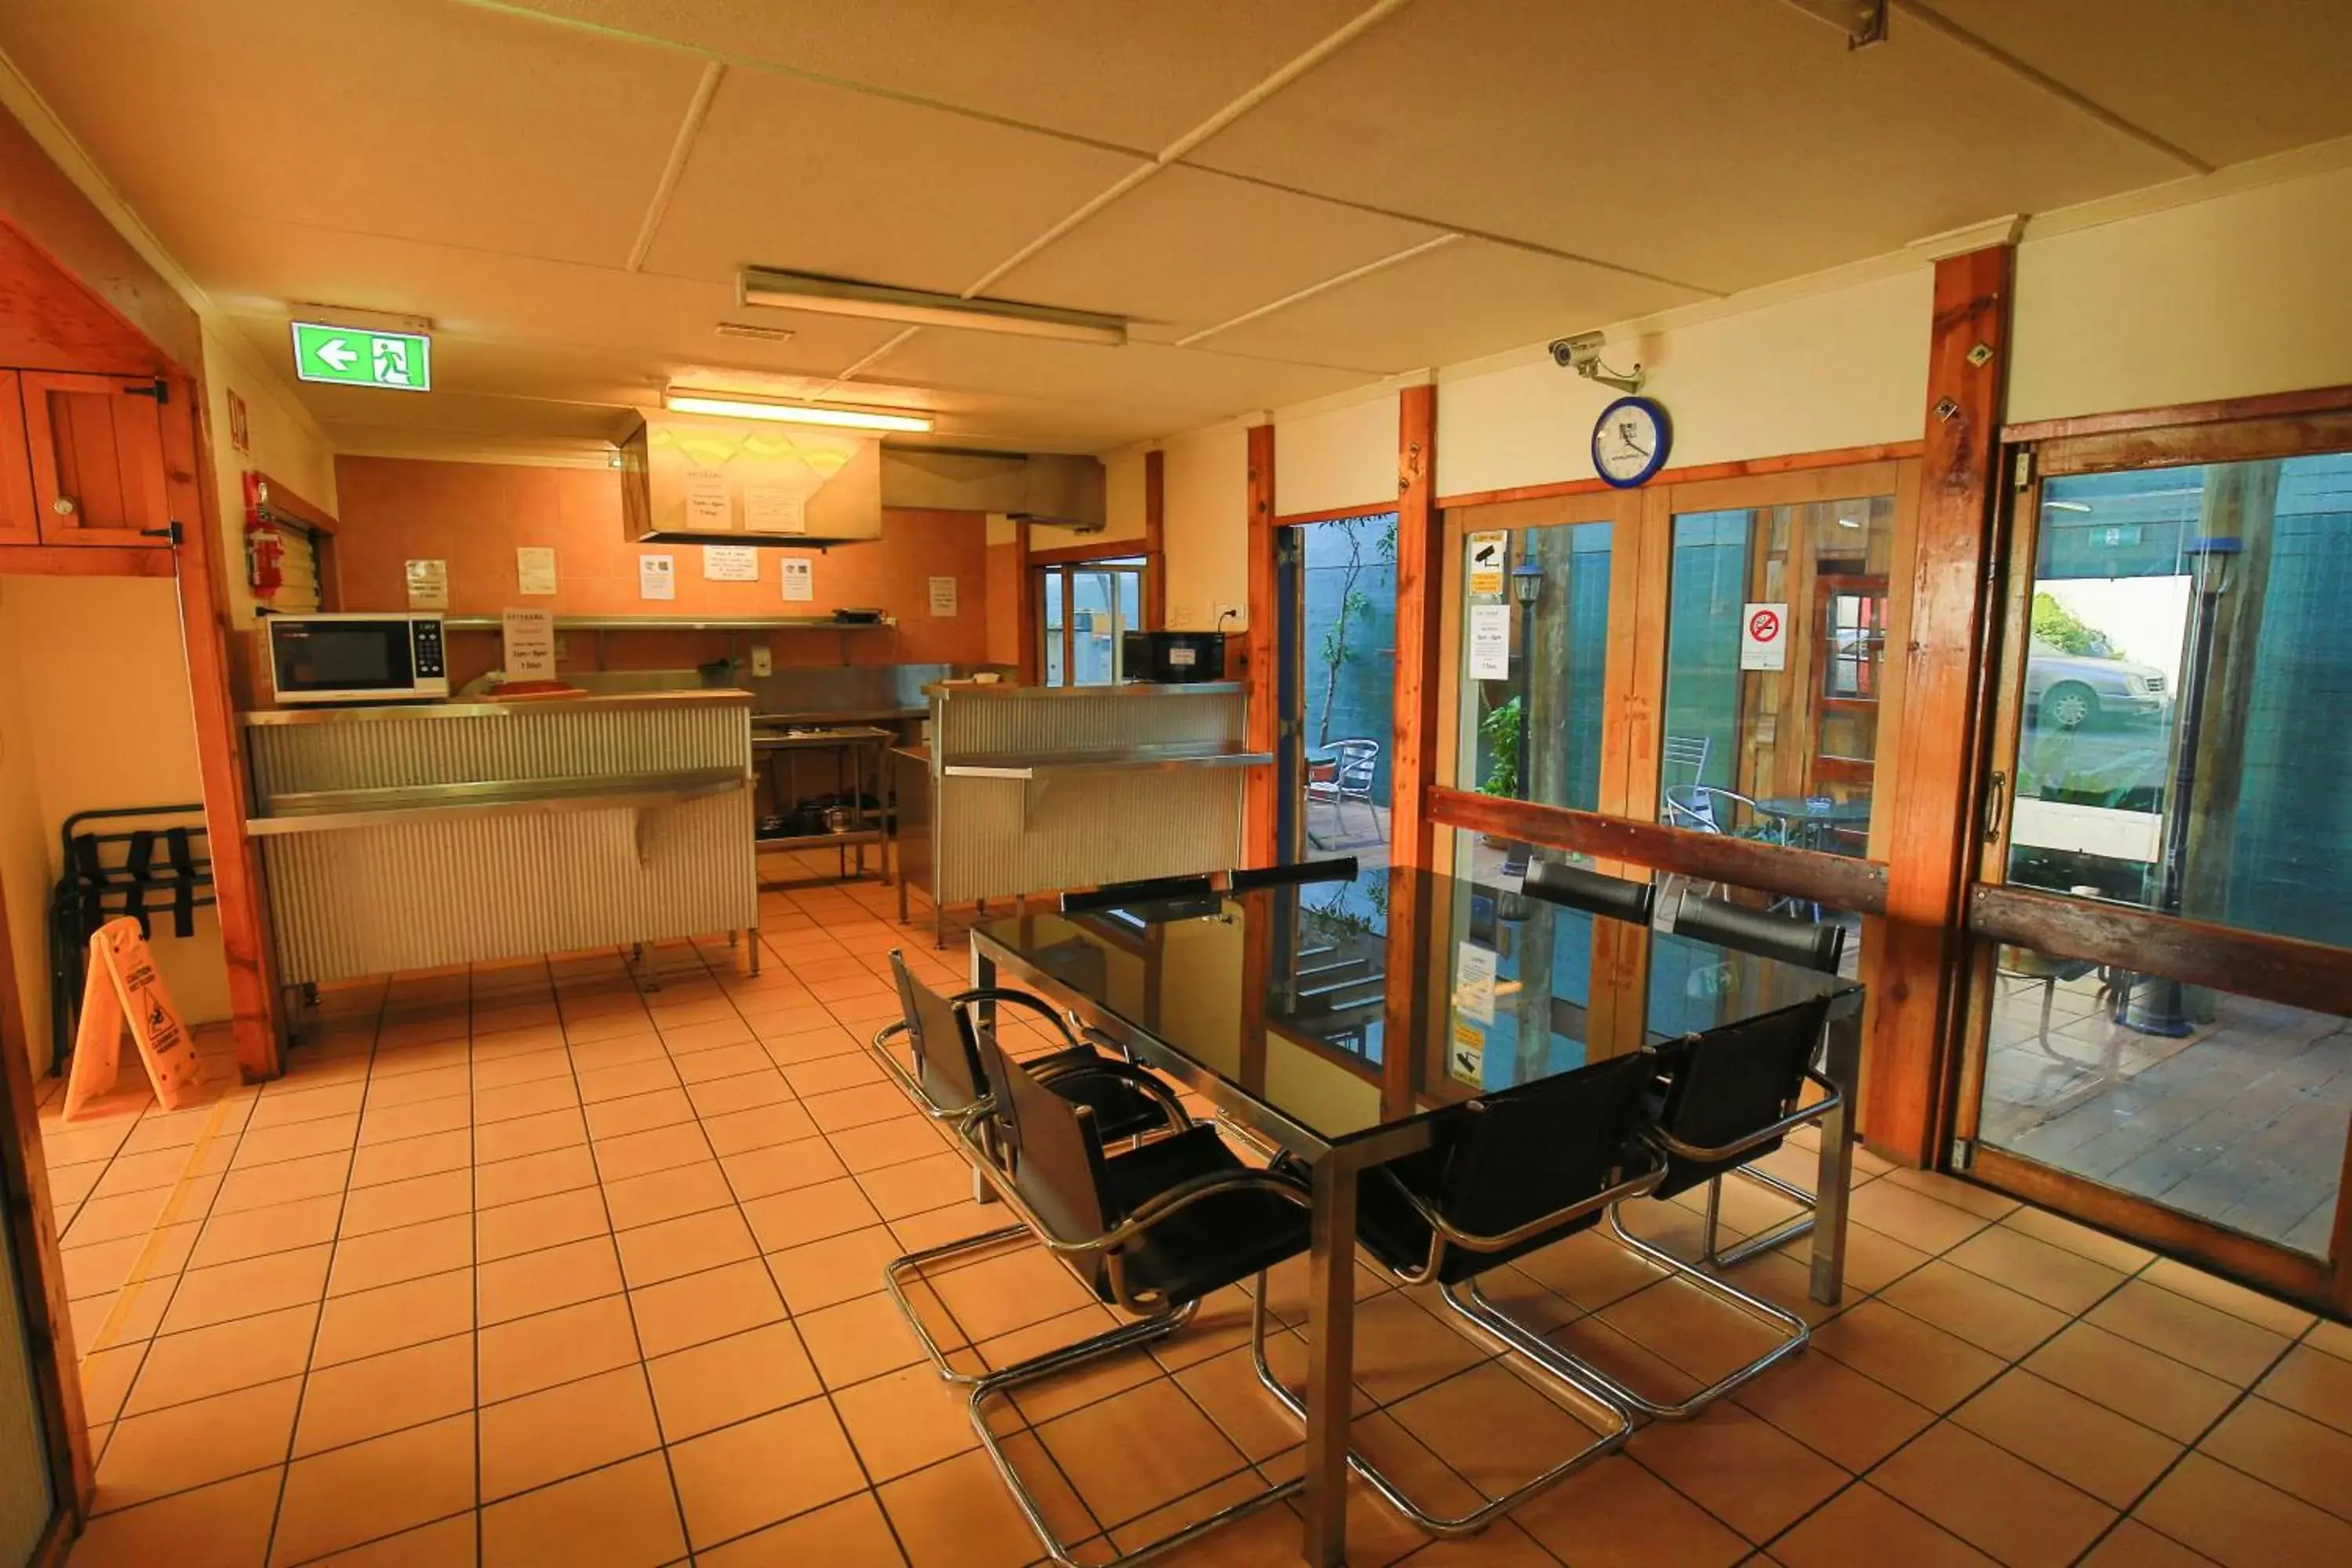 Communal kitchen in Brisbane Manor